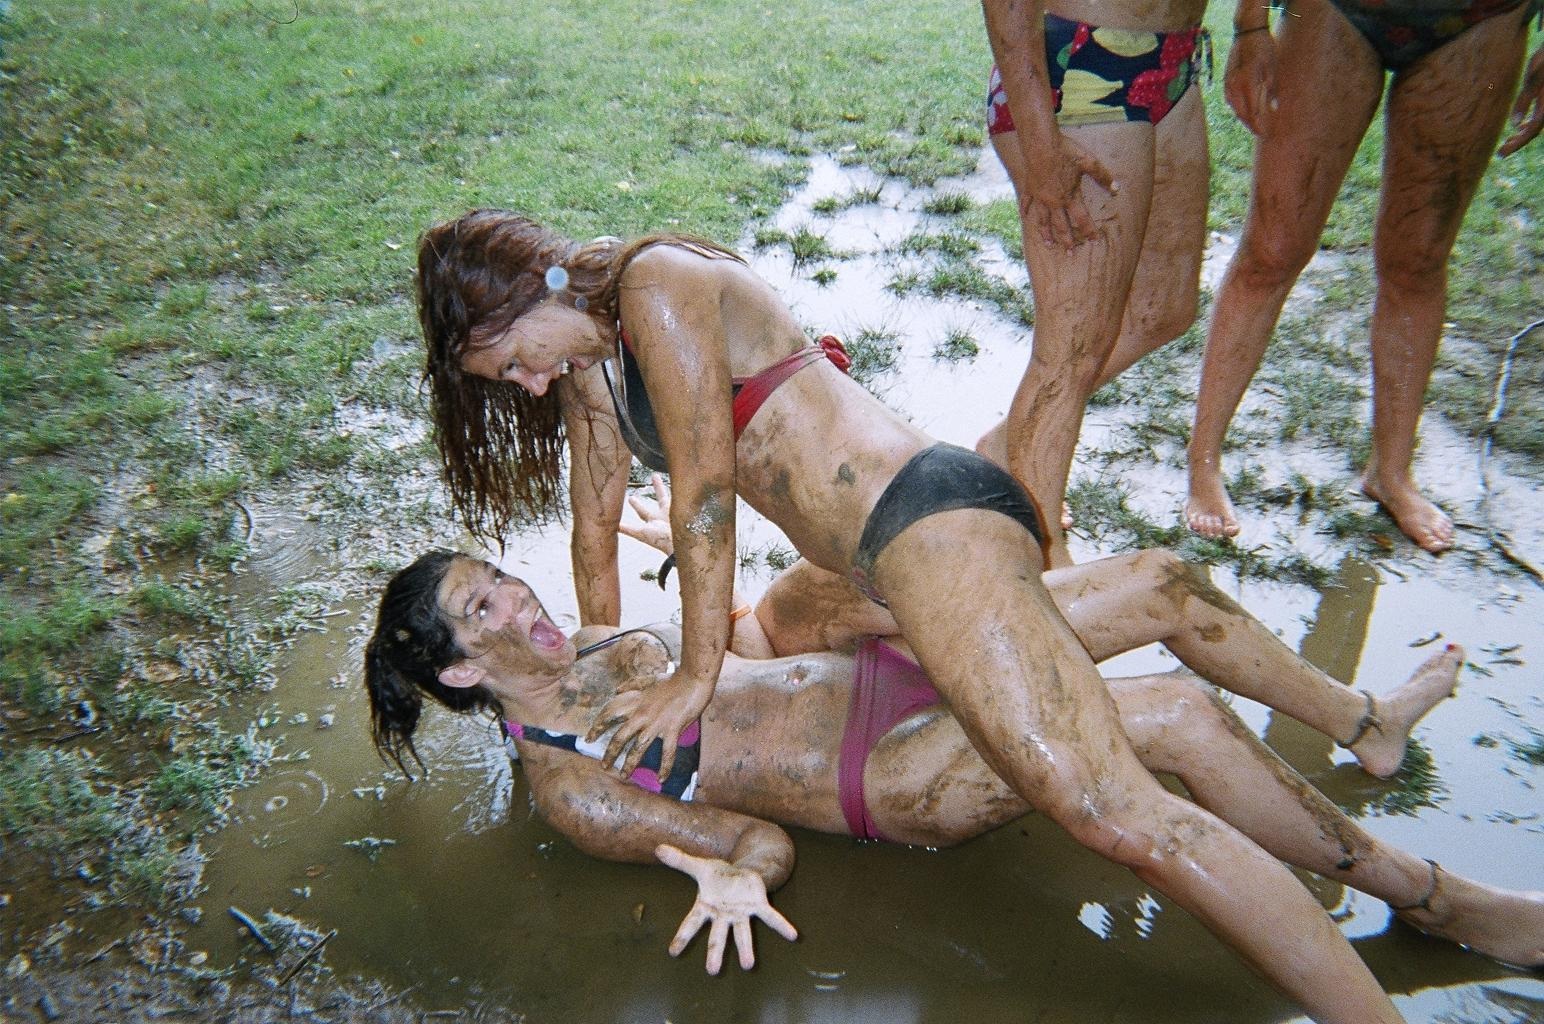 Girl Combat Porn In Mud